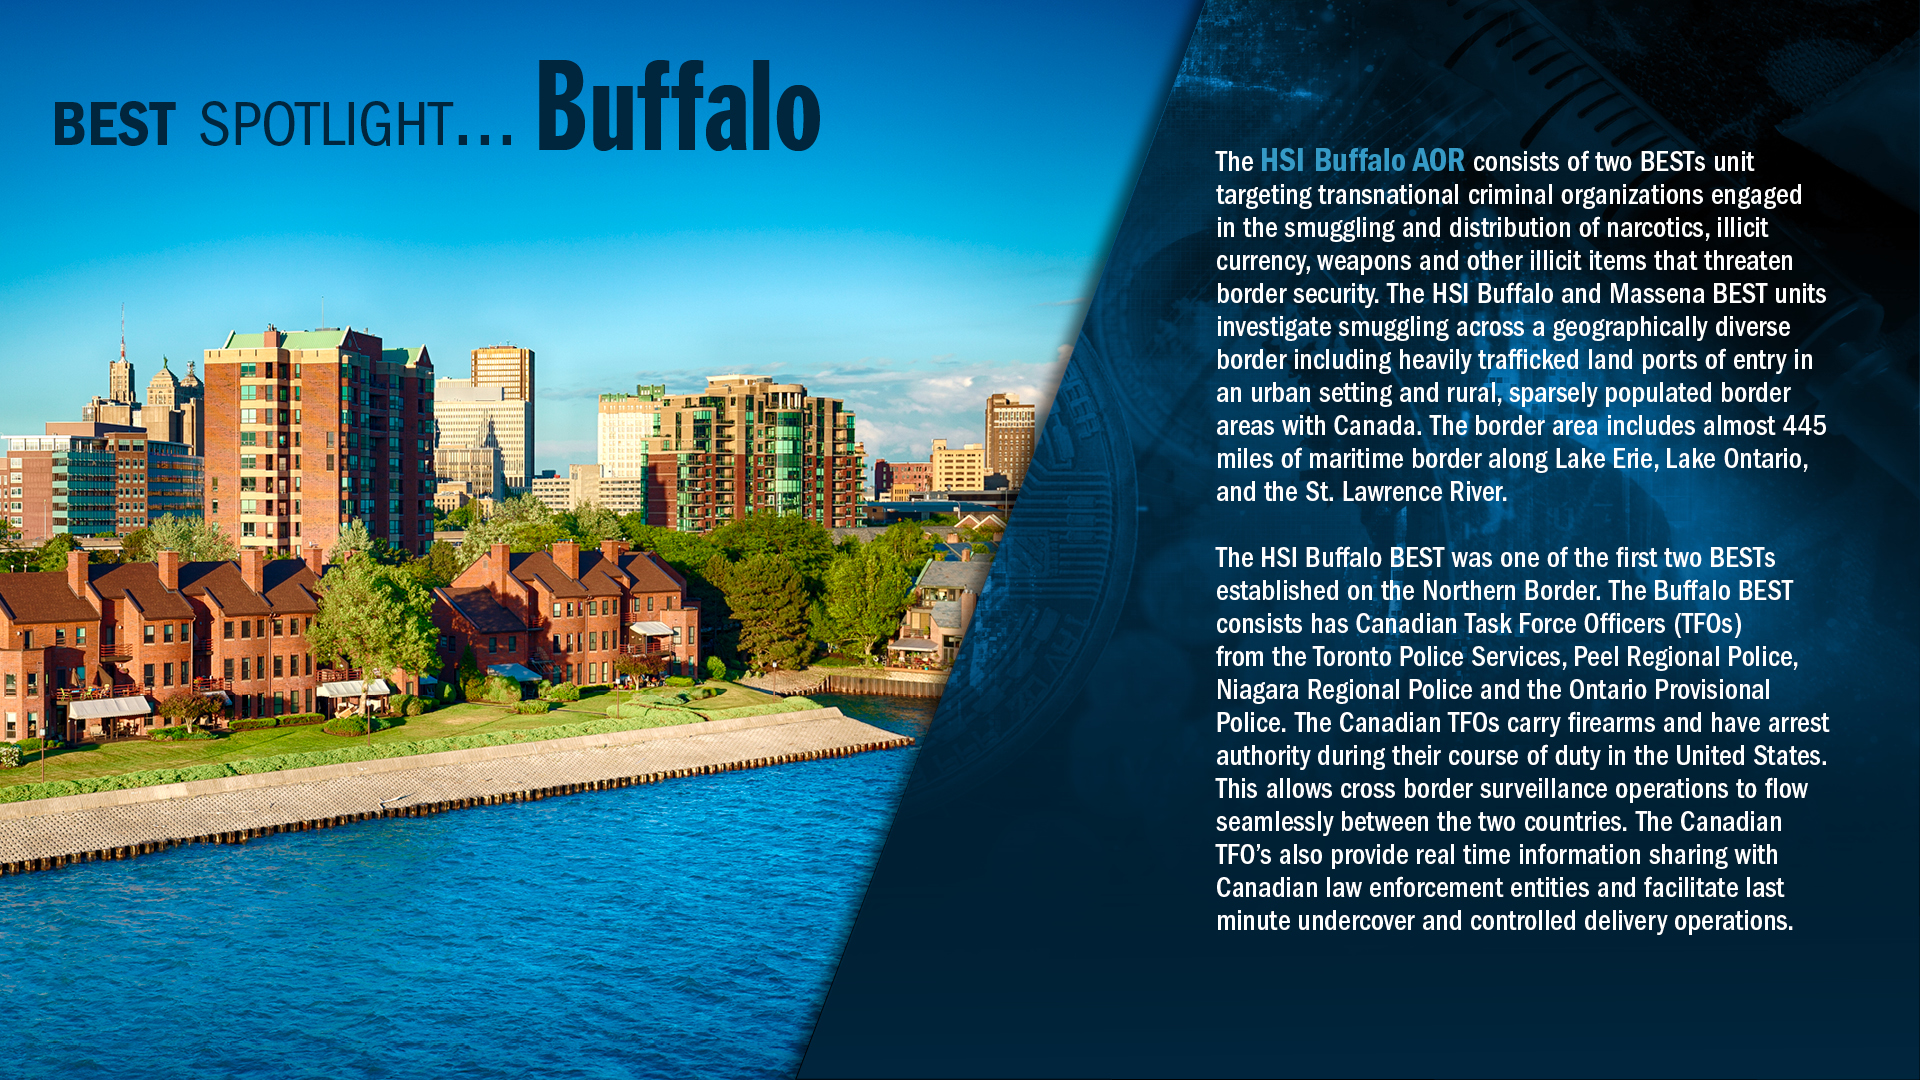 BEST: Buffalo